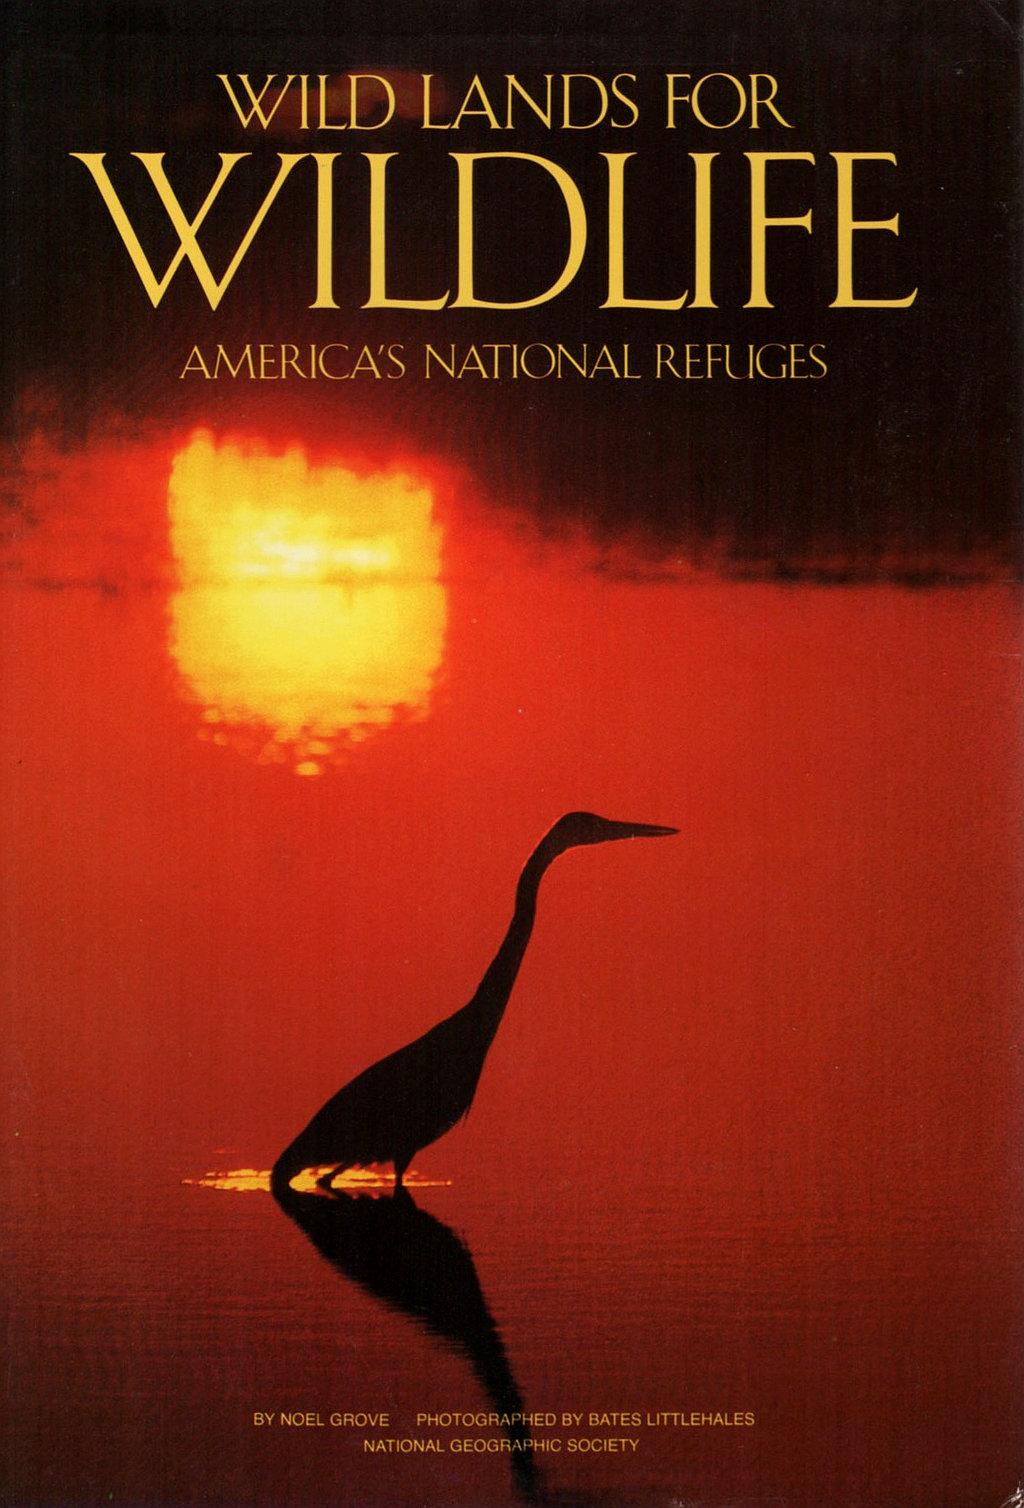 Wild Lands for Wildlife (Noel Grove)